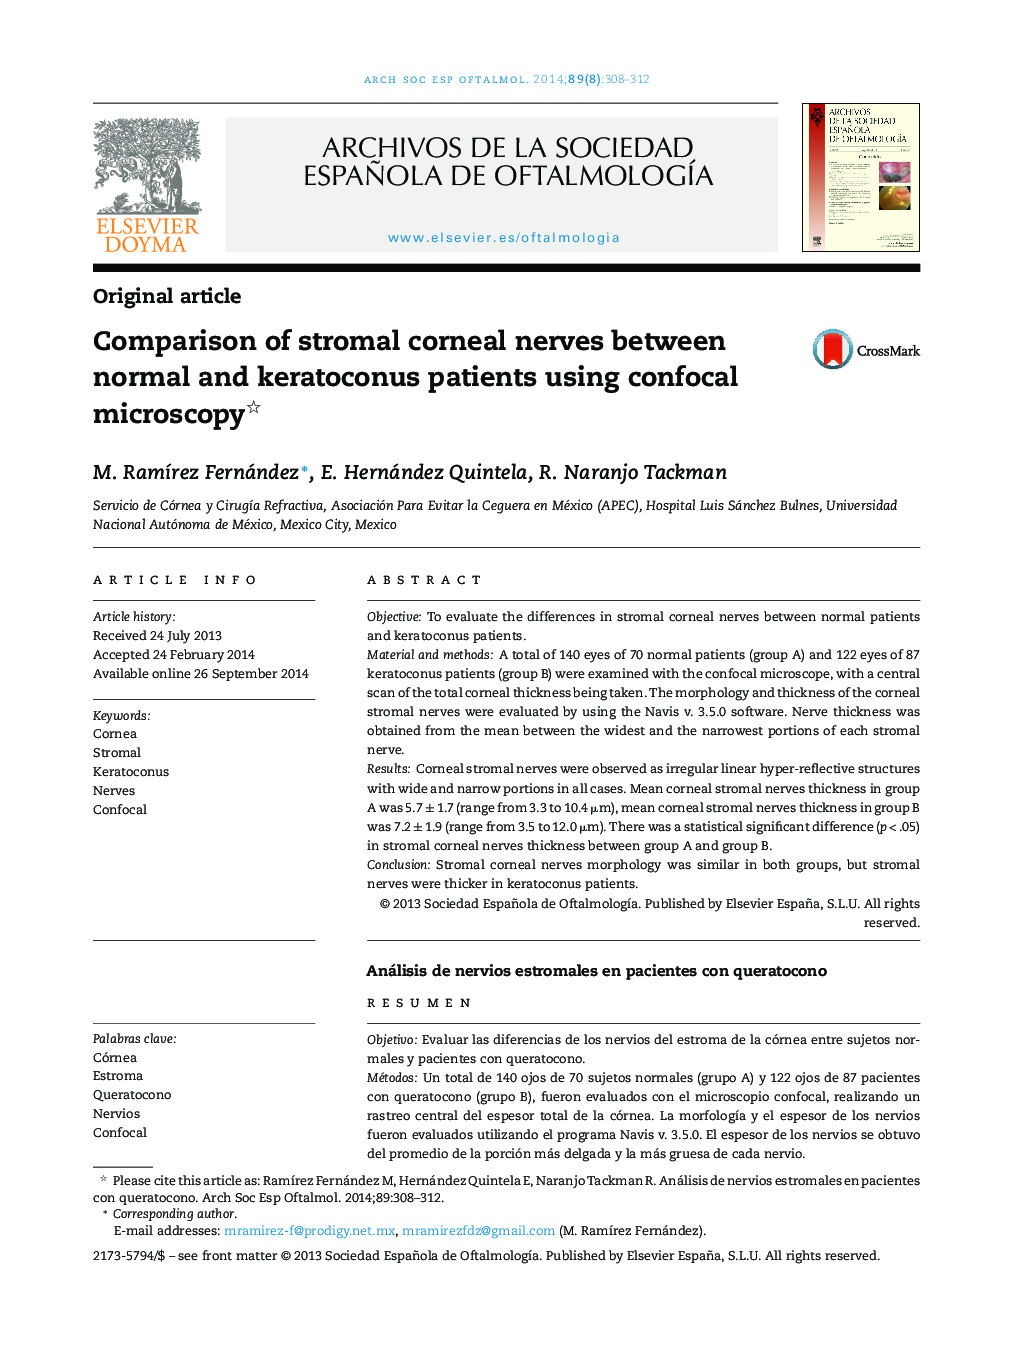 مقایسه عصب قرنیه استروما بین بیماران نرمال و کراتوکونوس با استفاده از میکروسکوپ پاپوکال 